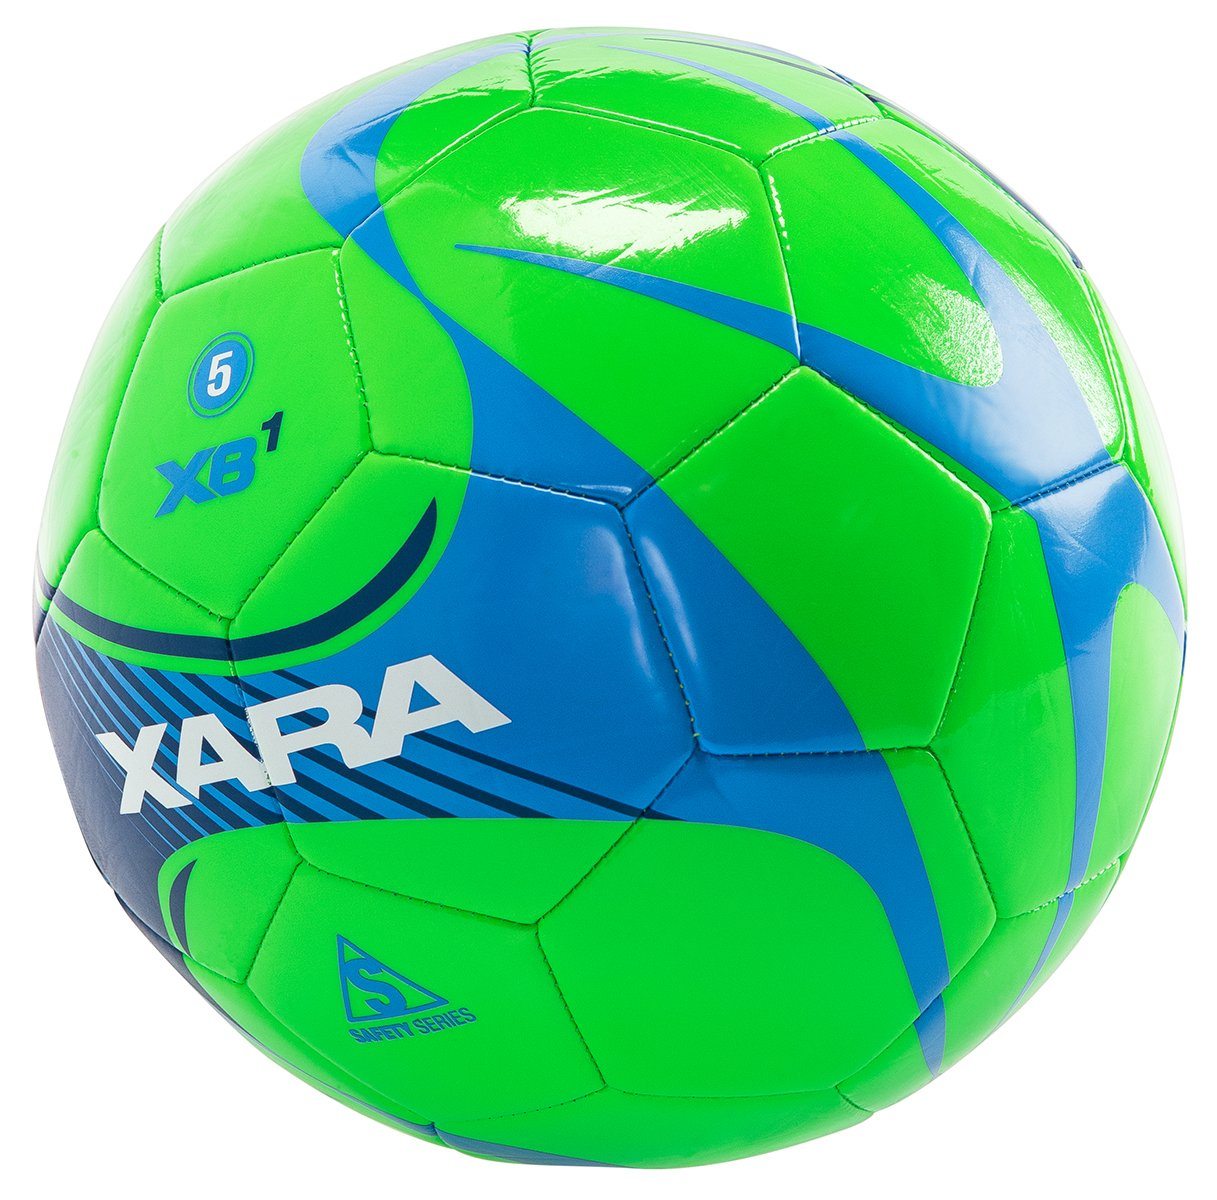 Xara XB1 V5 Soccer Ball | 8051 Soccer Ball Xara 